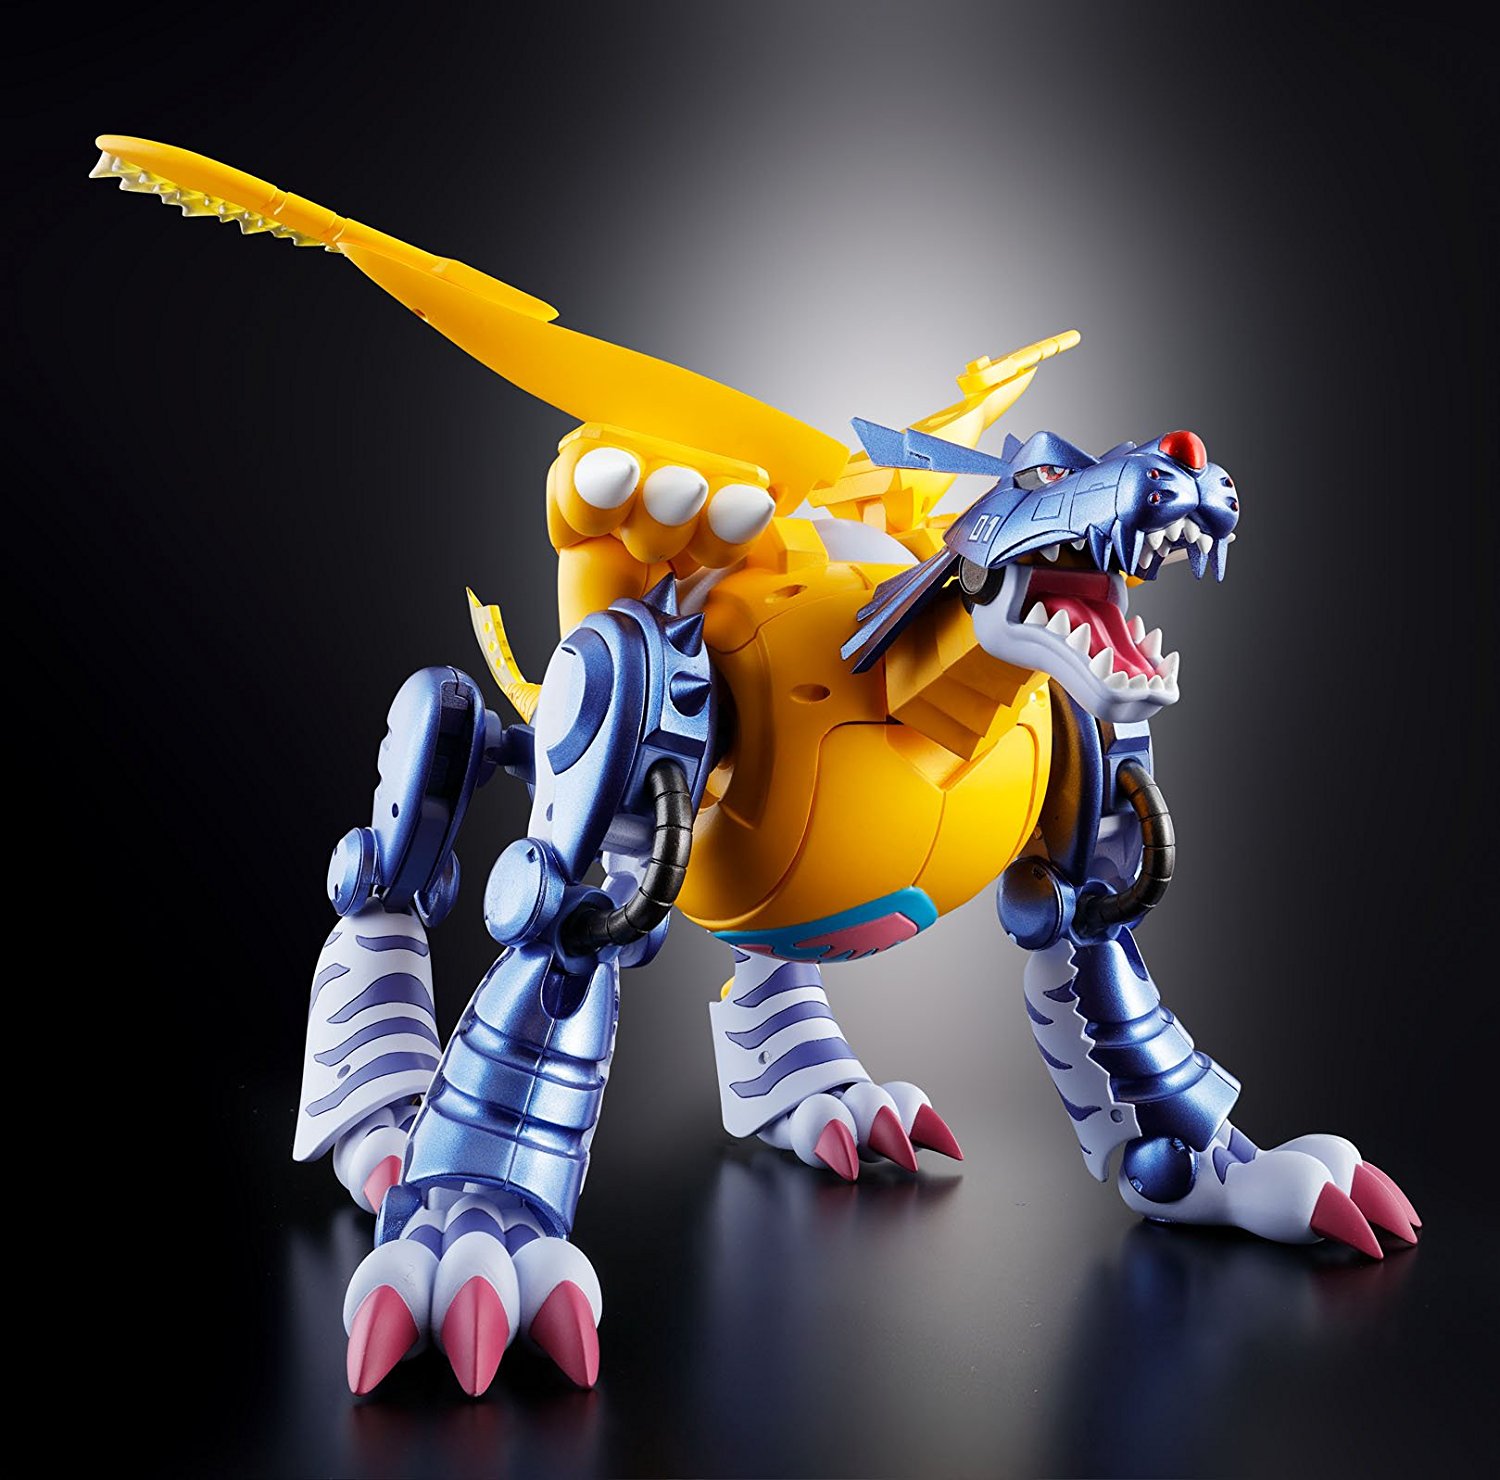 メタルガルルモンx ガレキ 可動フィギュア - 模型/プラモデル